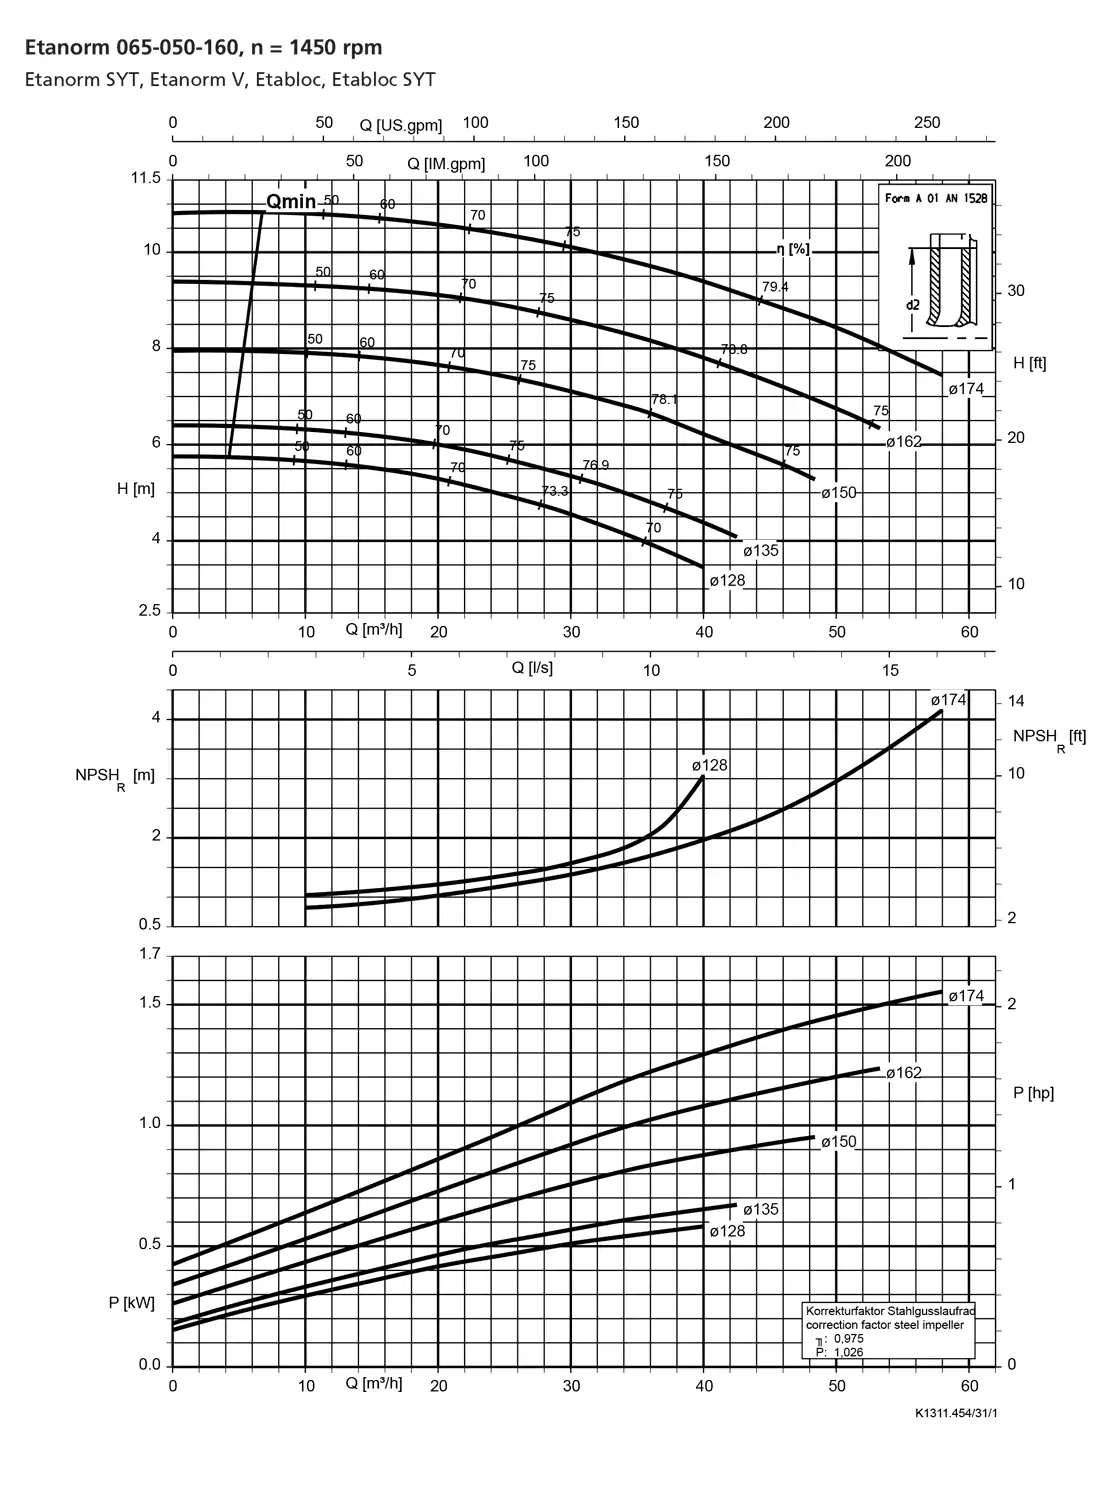 نمودار-کارکرد-پمپ-etanorm-syt-65-050-160-1450